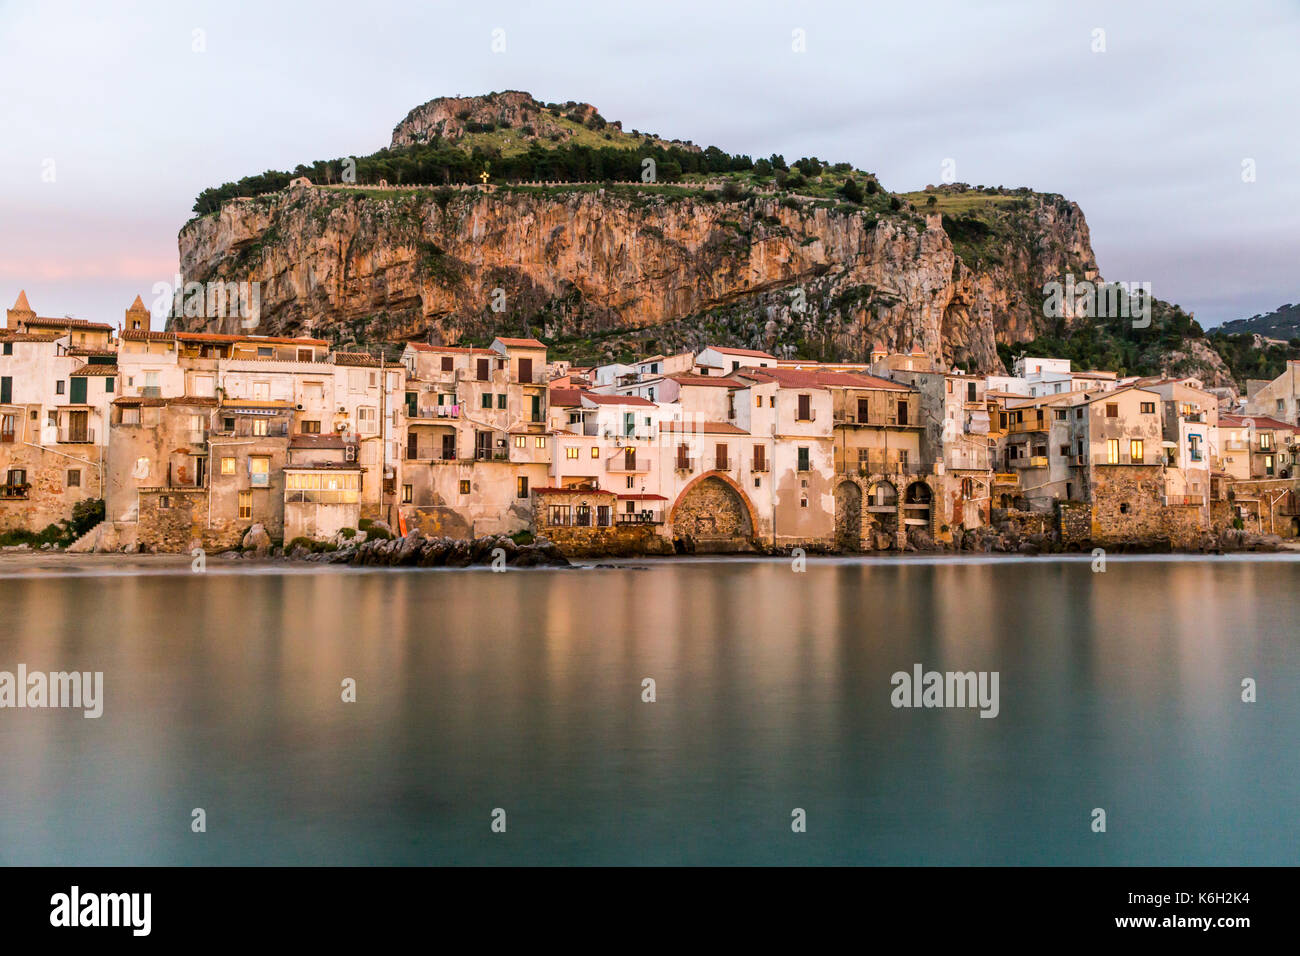 Belle vue sur le port de maisons anciennes de Cefalù, au crépuscule, en Sicile Italie. Banque D'Images